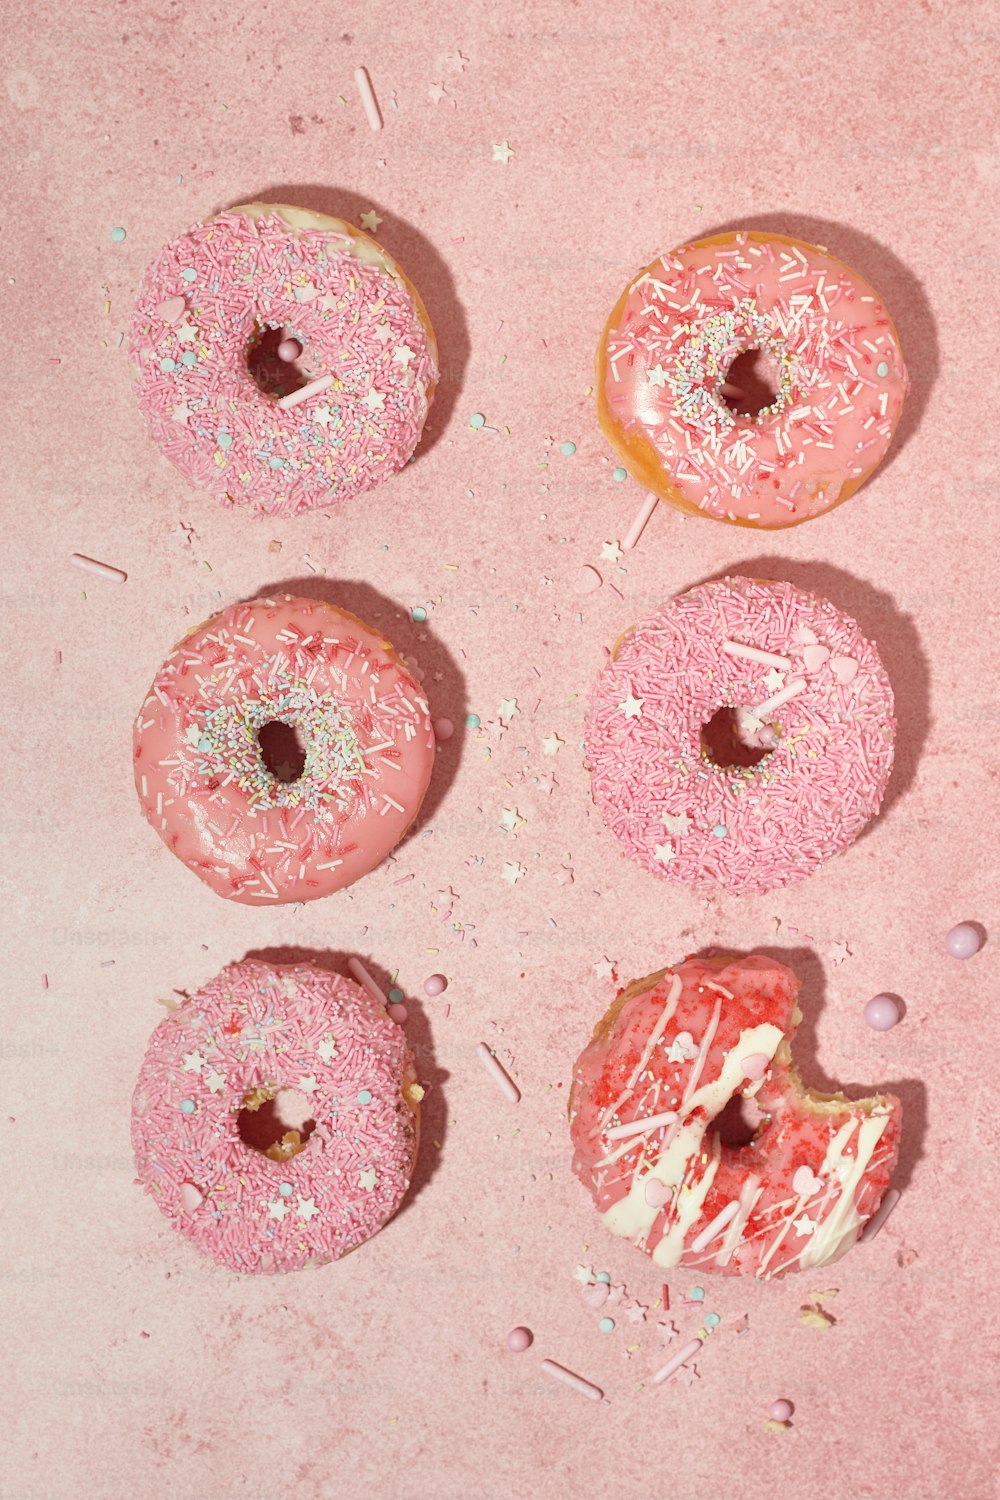 quatro donuts com cobertura rosa e polvilhos